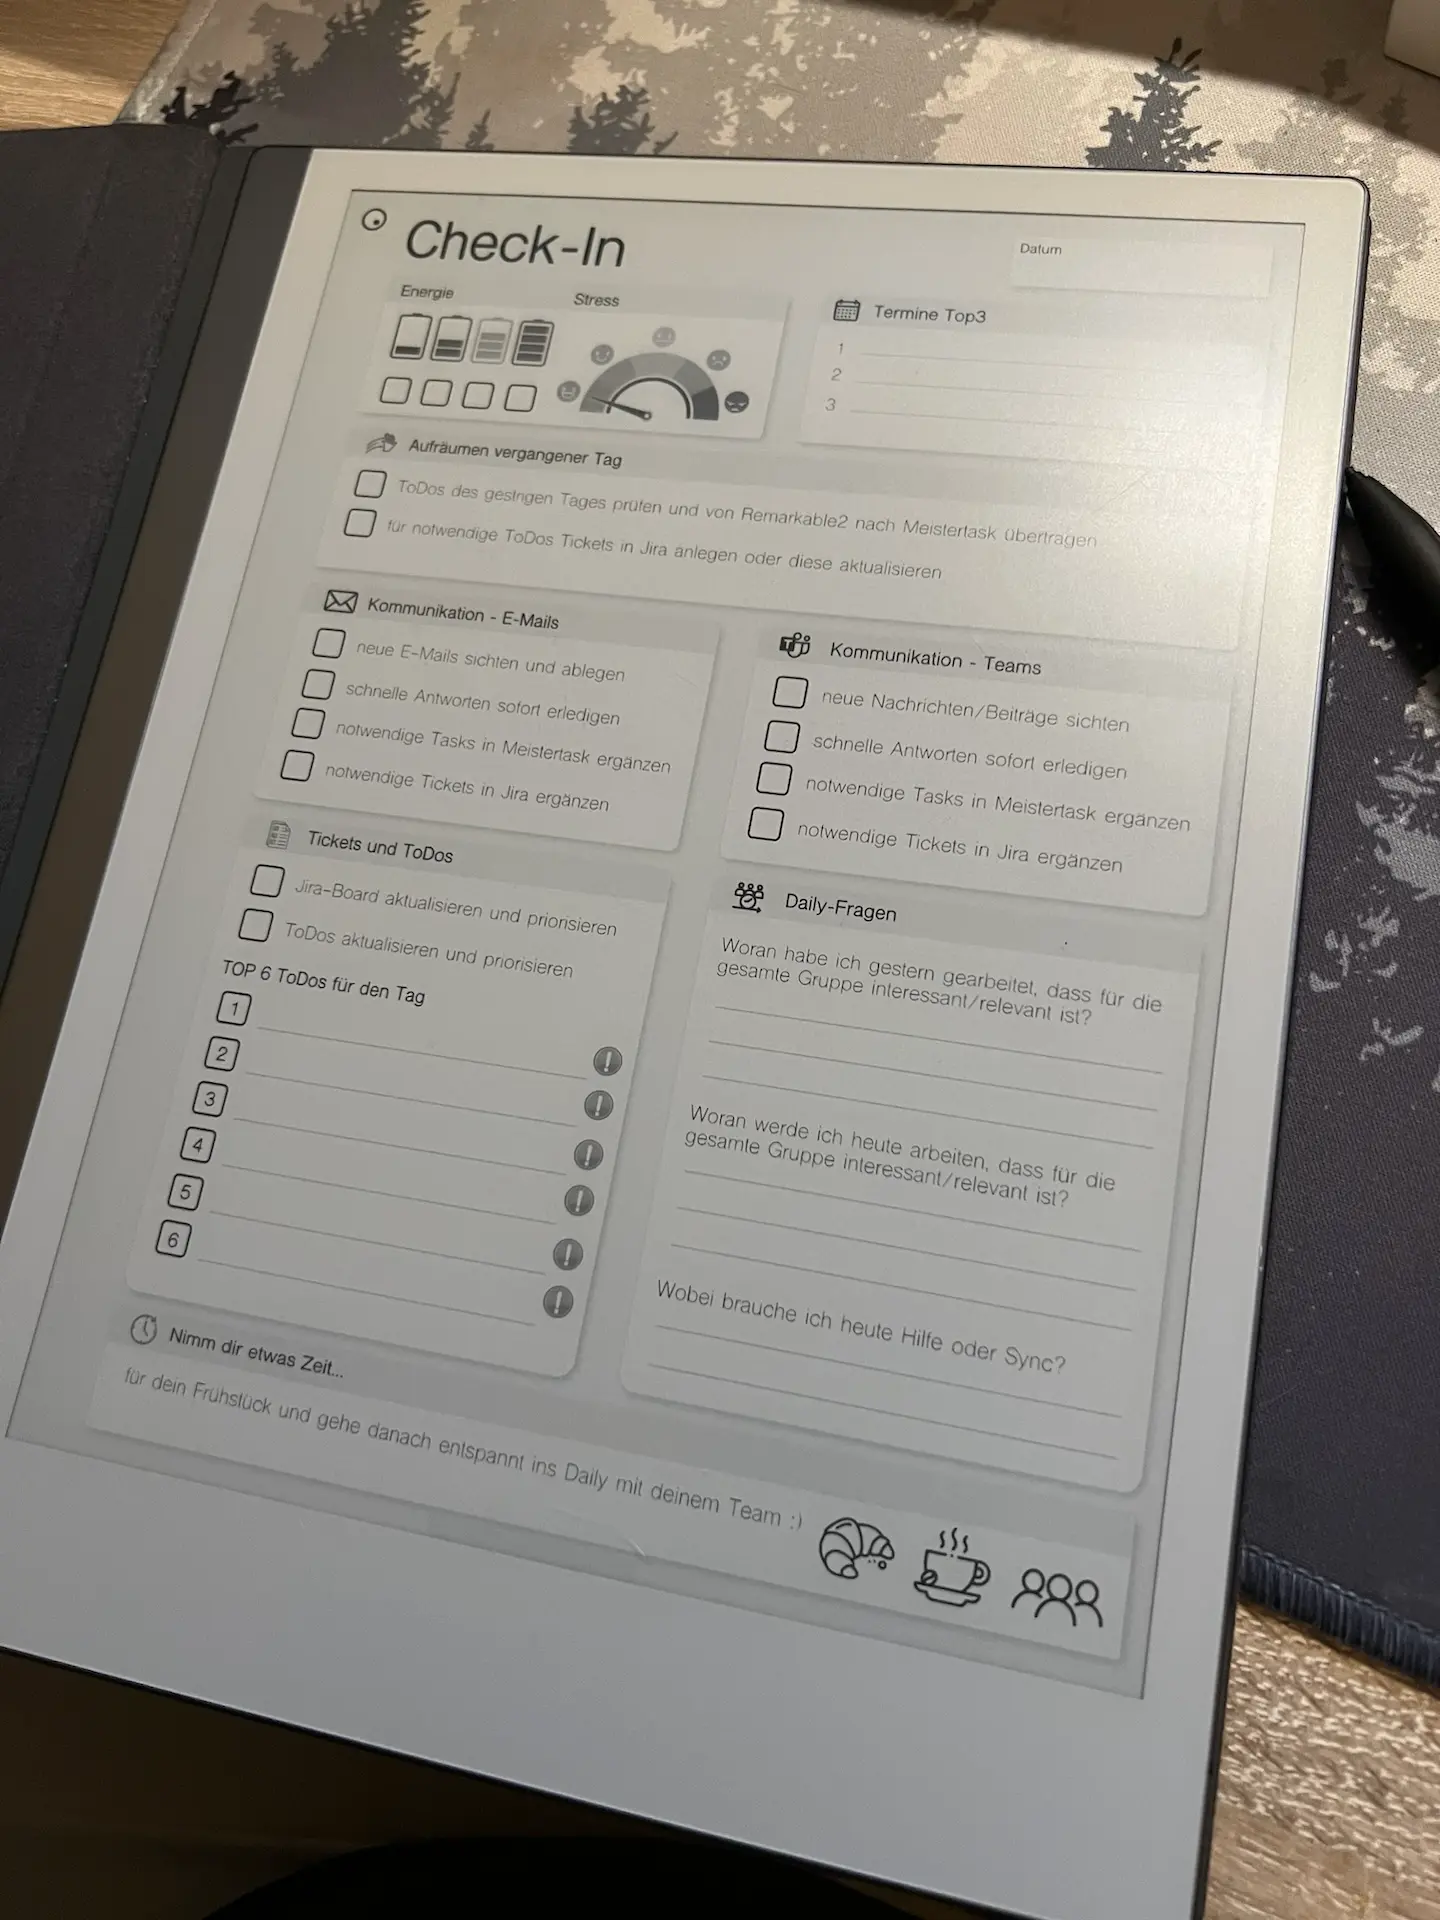 Ein reMarkable 2 Tablet mit einem Check-In Template. Diverse Punkte mit Checkboxen.